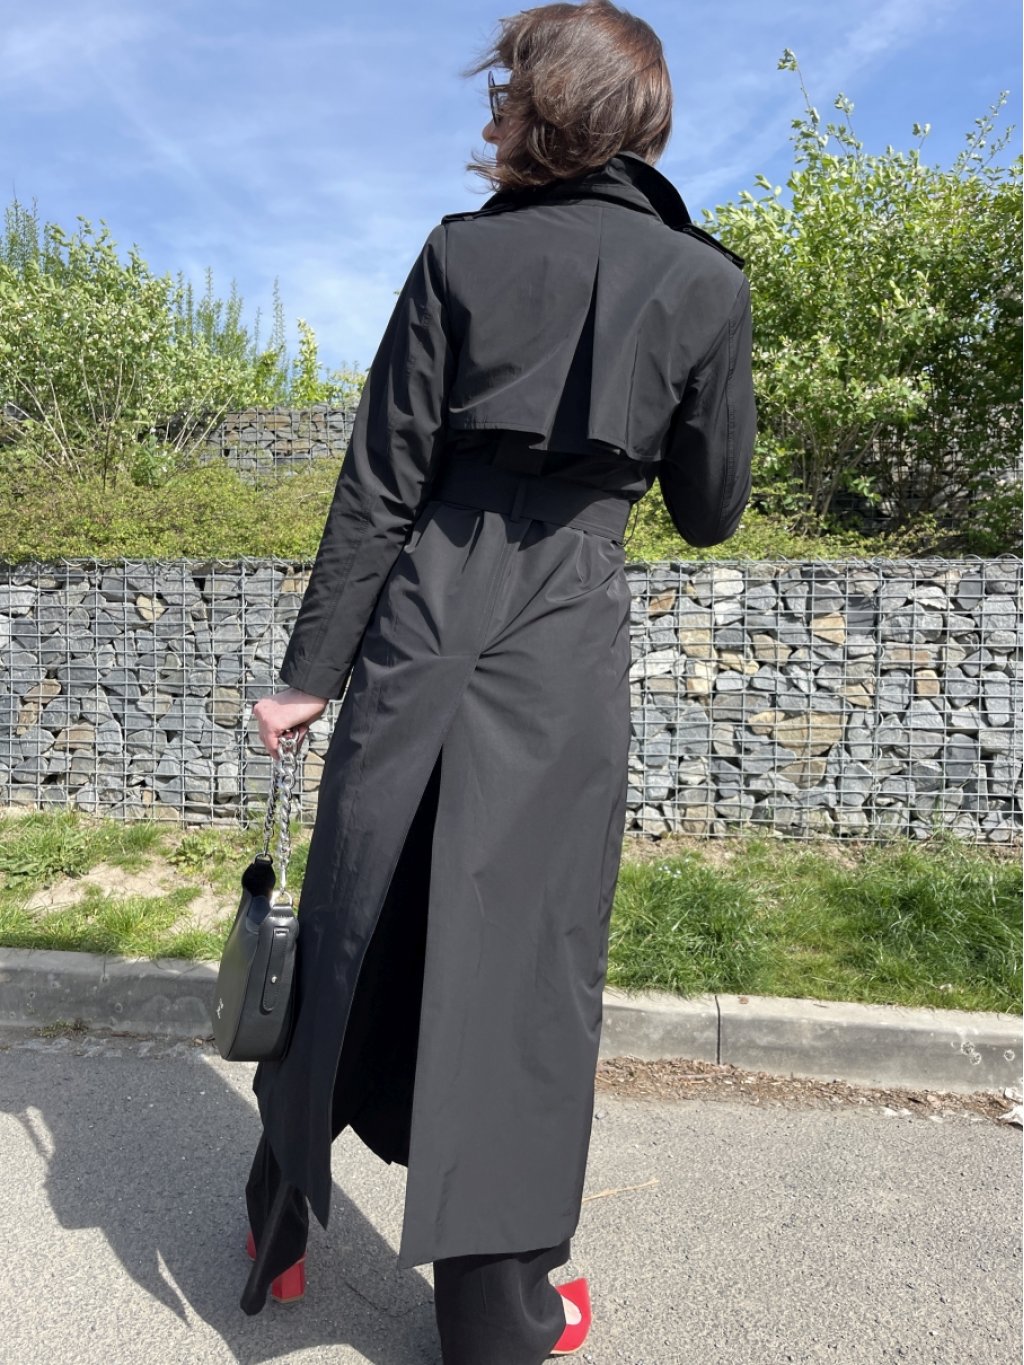 Kabát La Gabriella 5366-673 černý trenčkot dlouhý